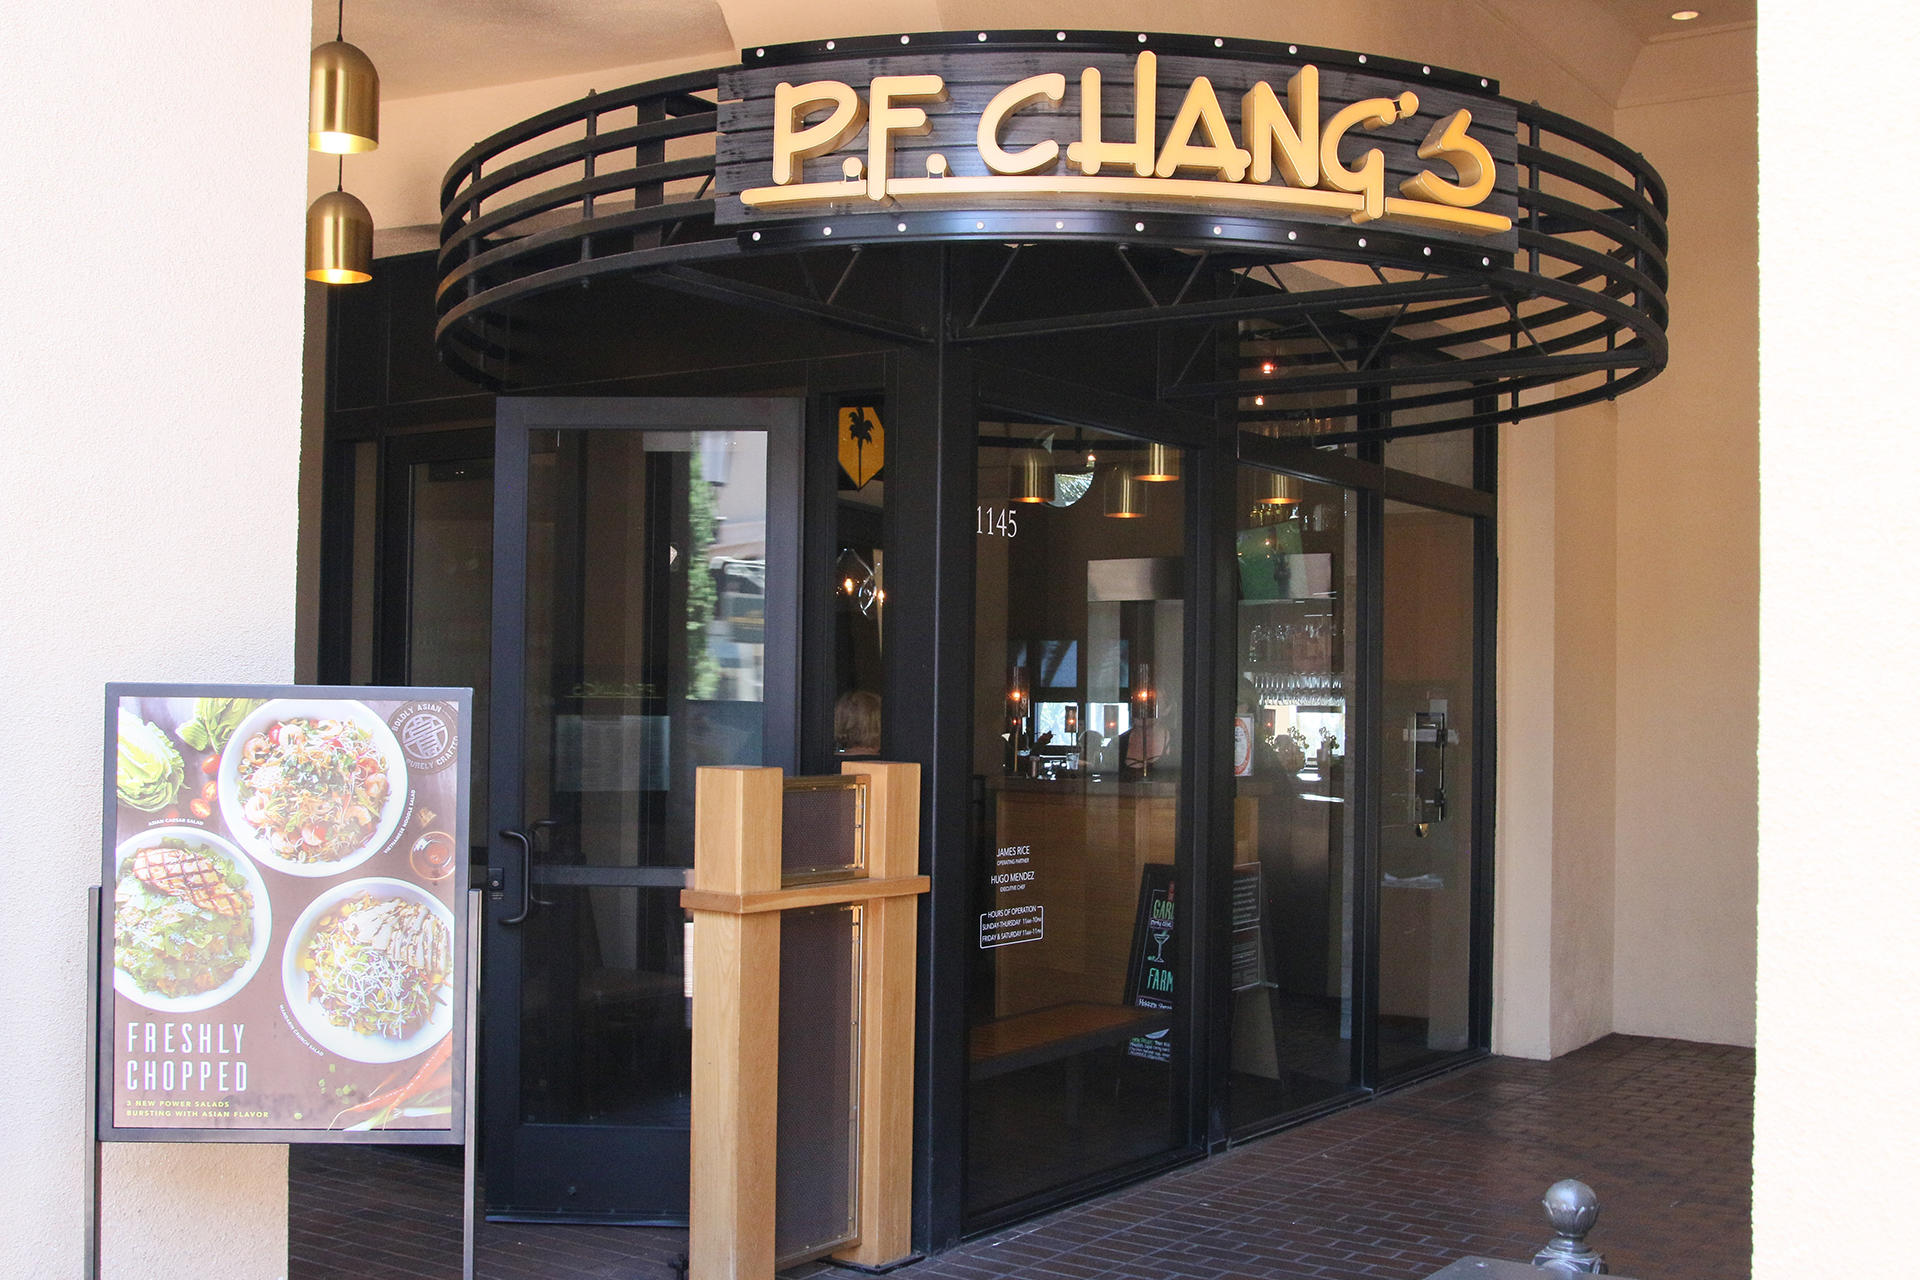 P.F. Chang's Newport  Asian & Chinese Food Restaurant - 1145 Newport  Center Dr. Newport Beach, CA